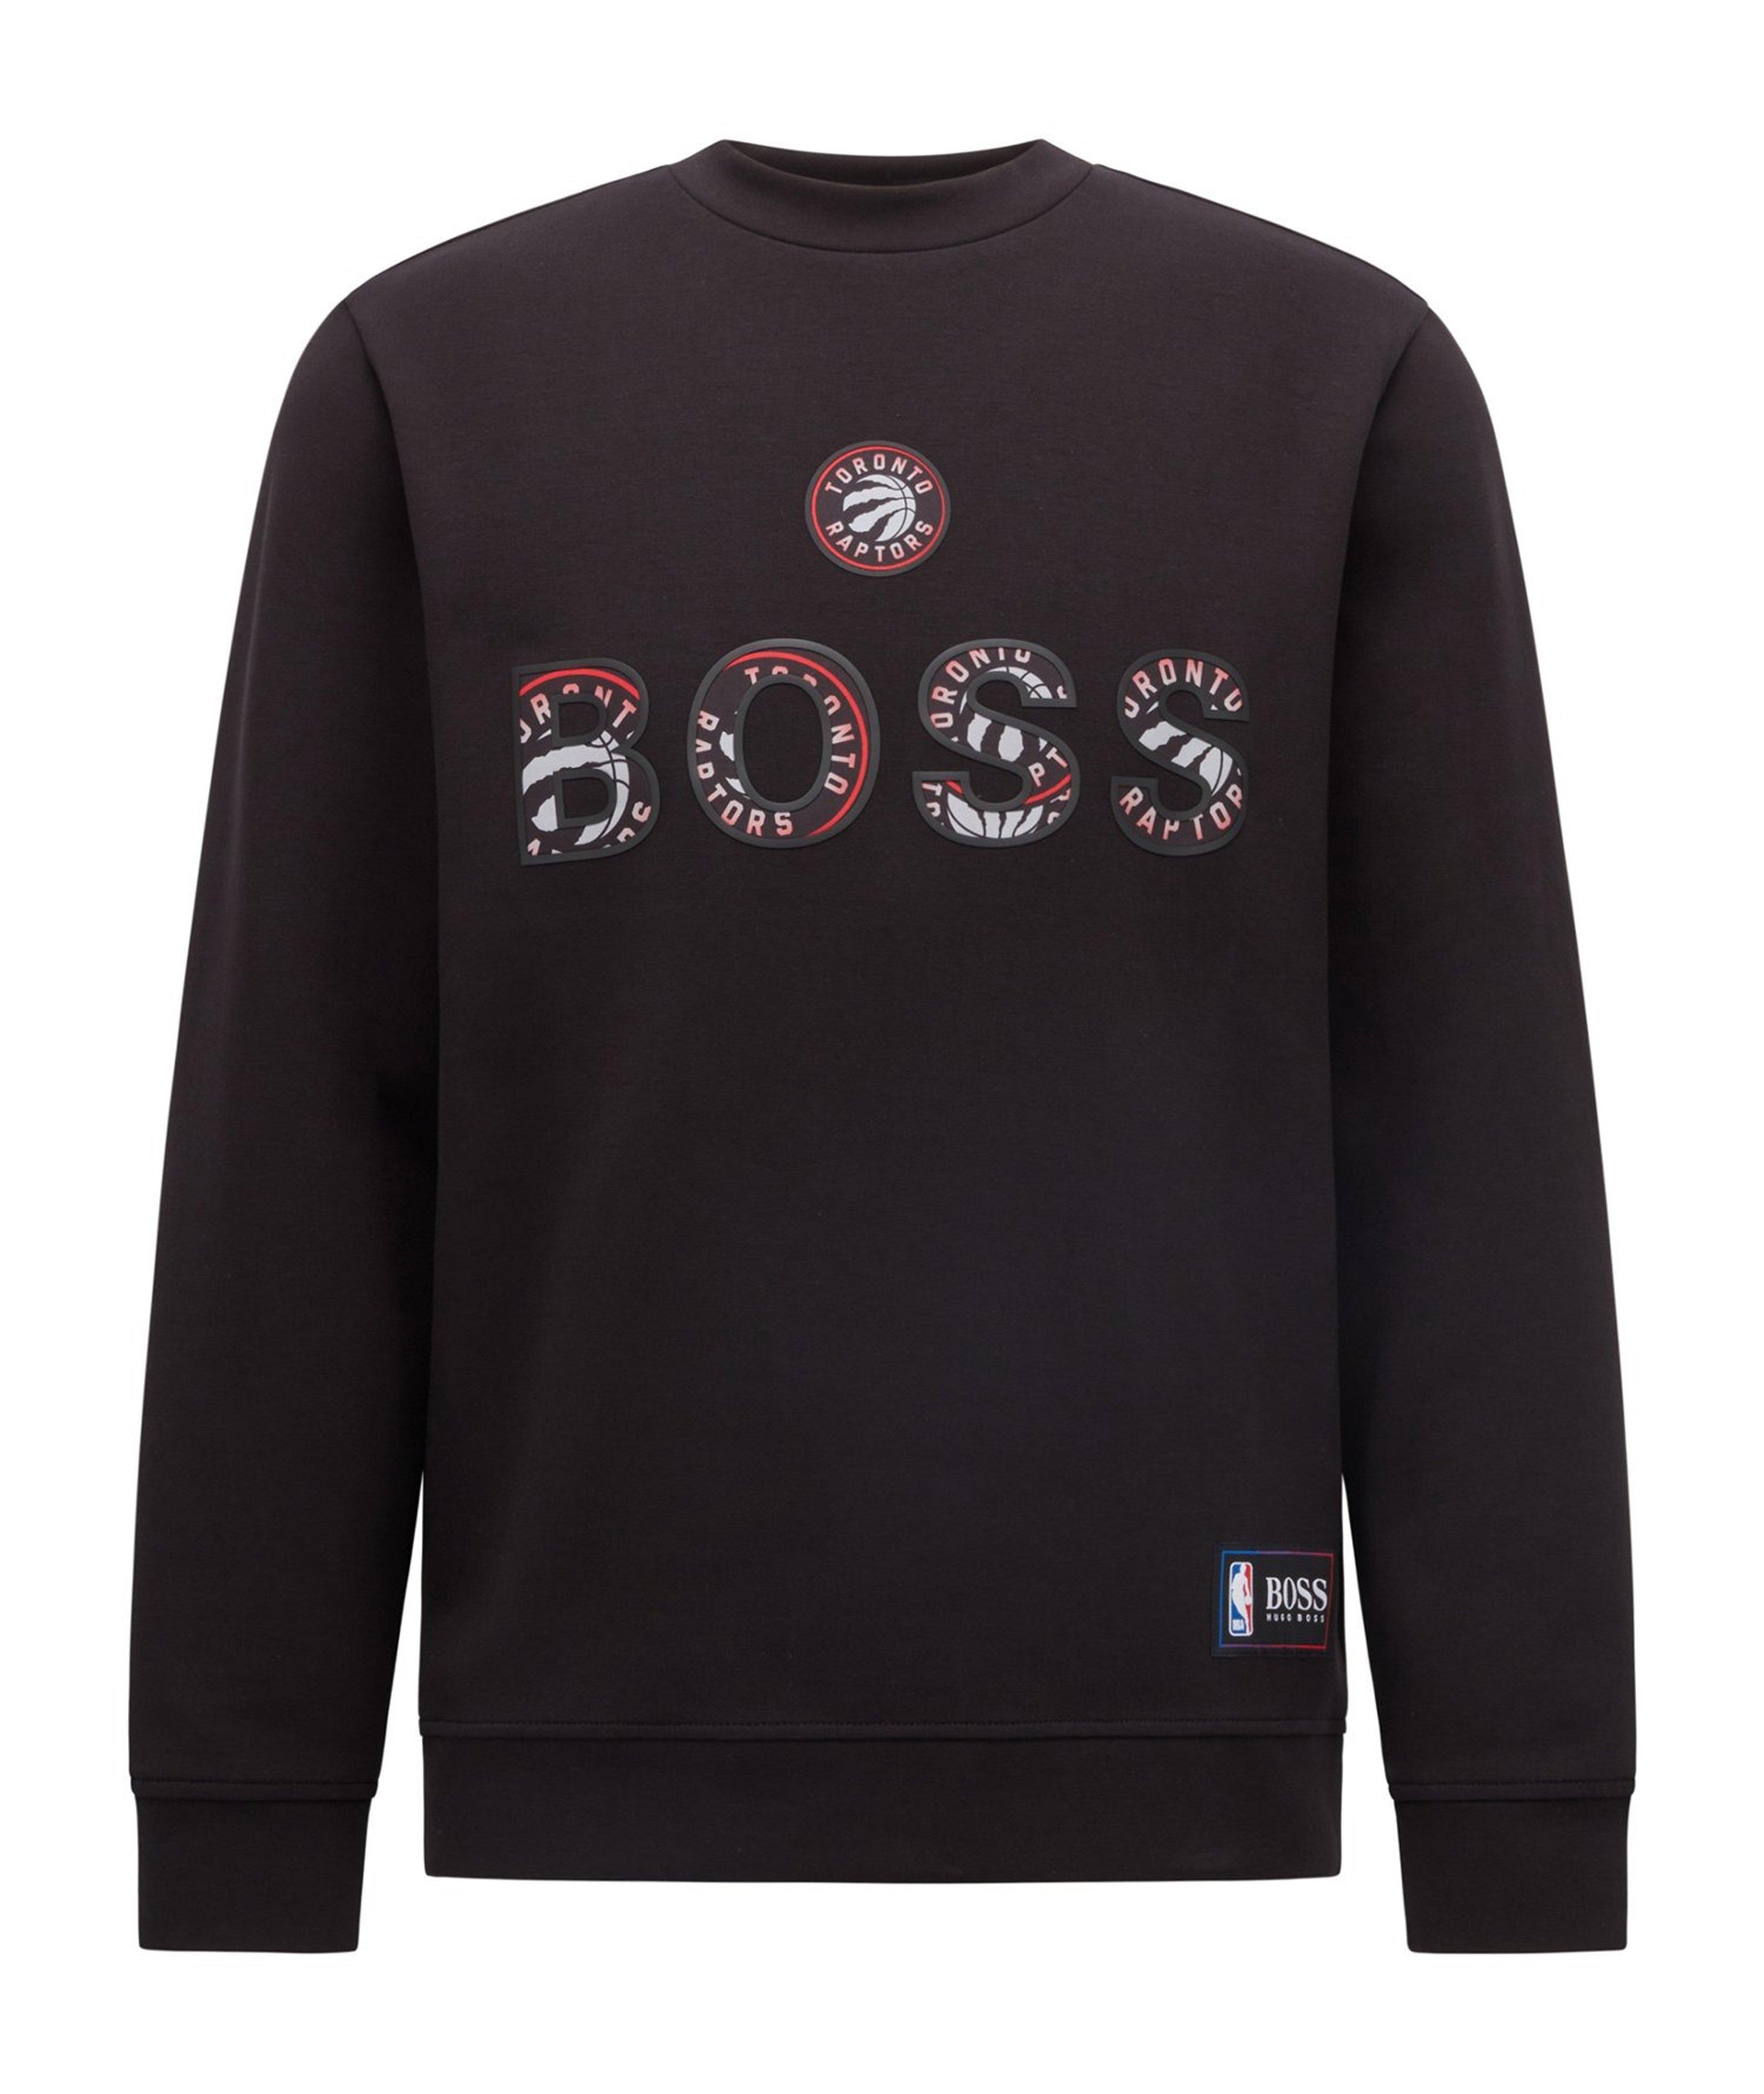 BOSS X NBA Long-Sleeve Cotton-Blend T-Shirt image 0